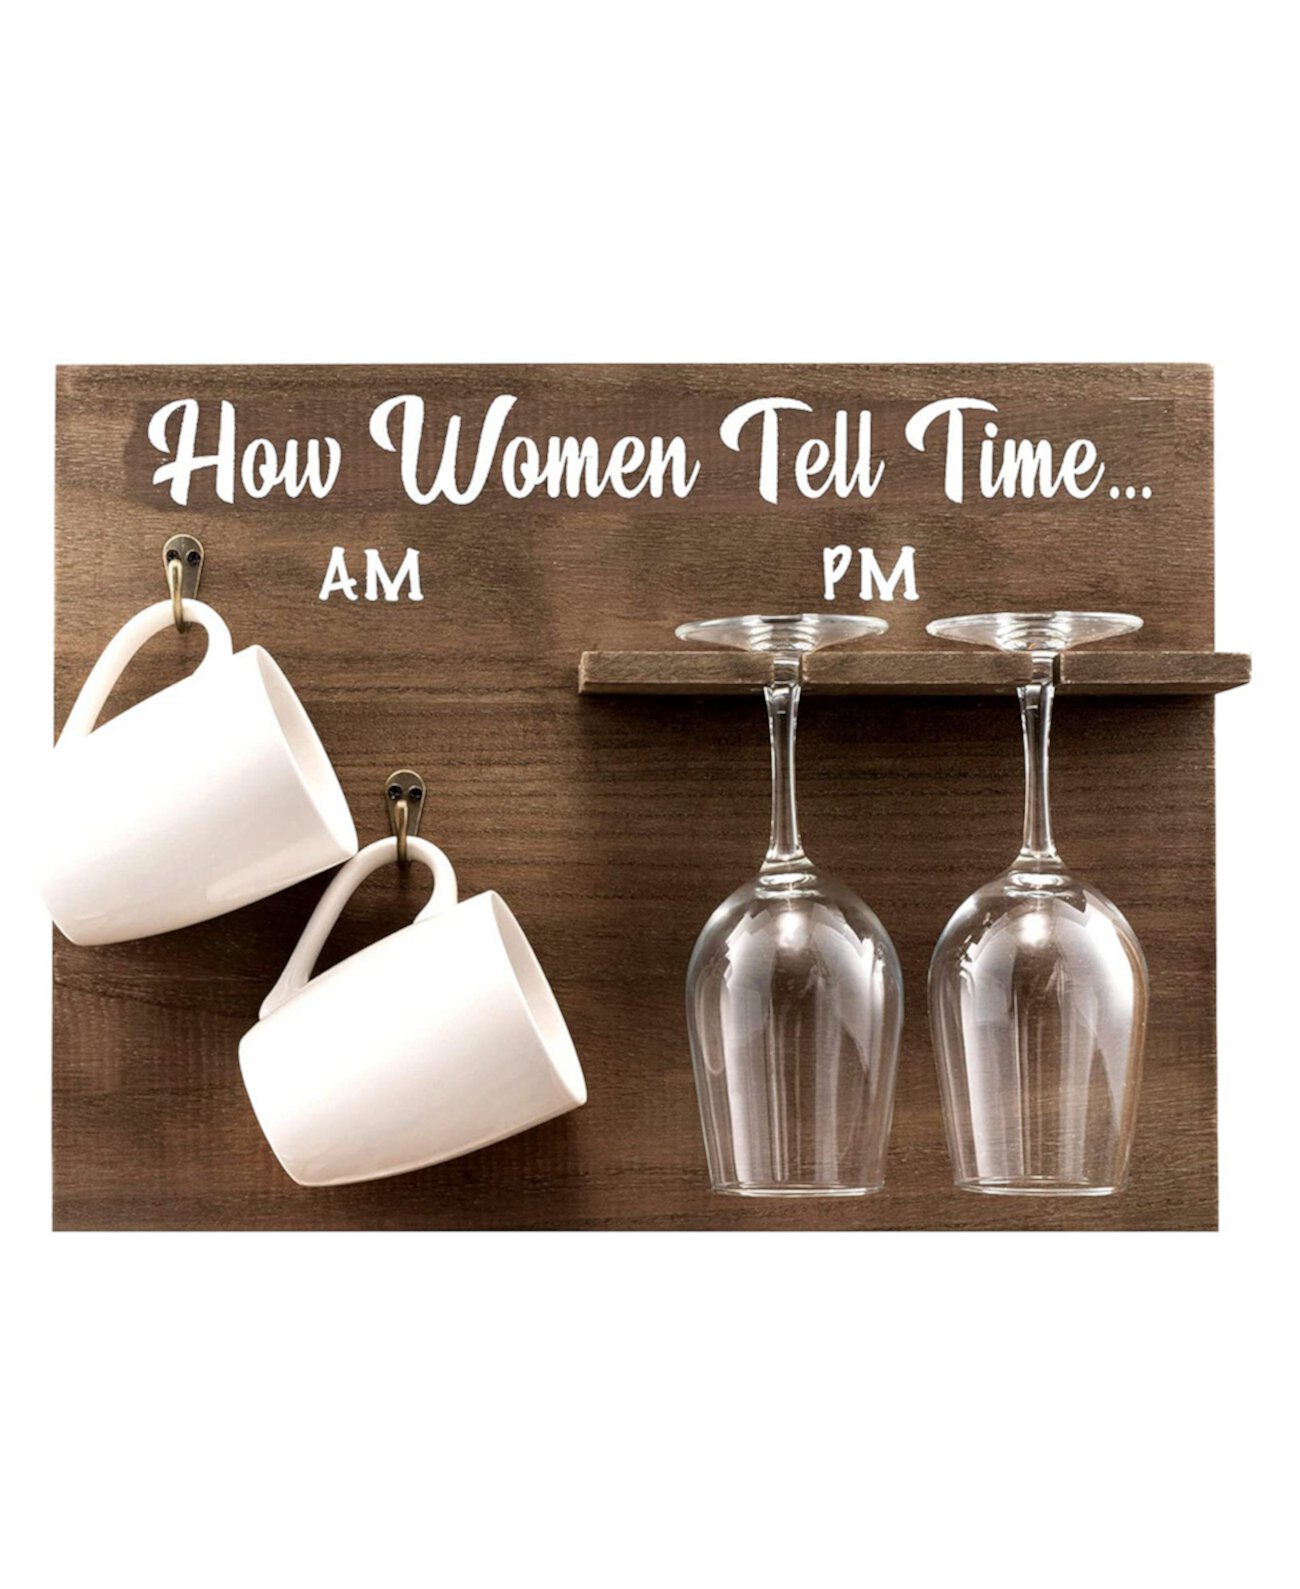 Настенная винная полка How Woman Tell Time с бокалами для вина и кофейными кружками, набор из 5 шт. Bezrat